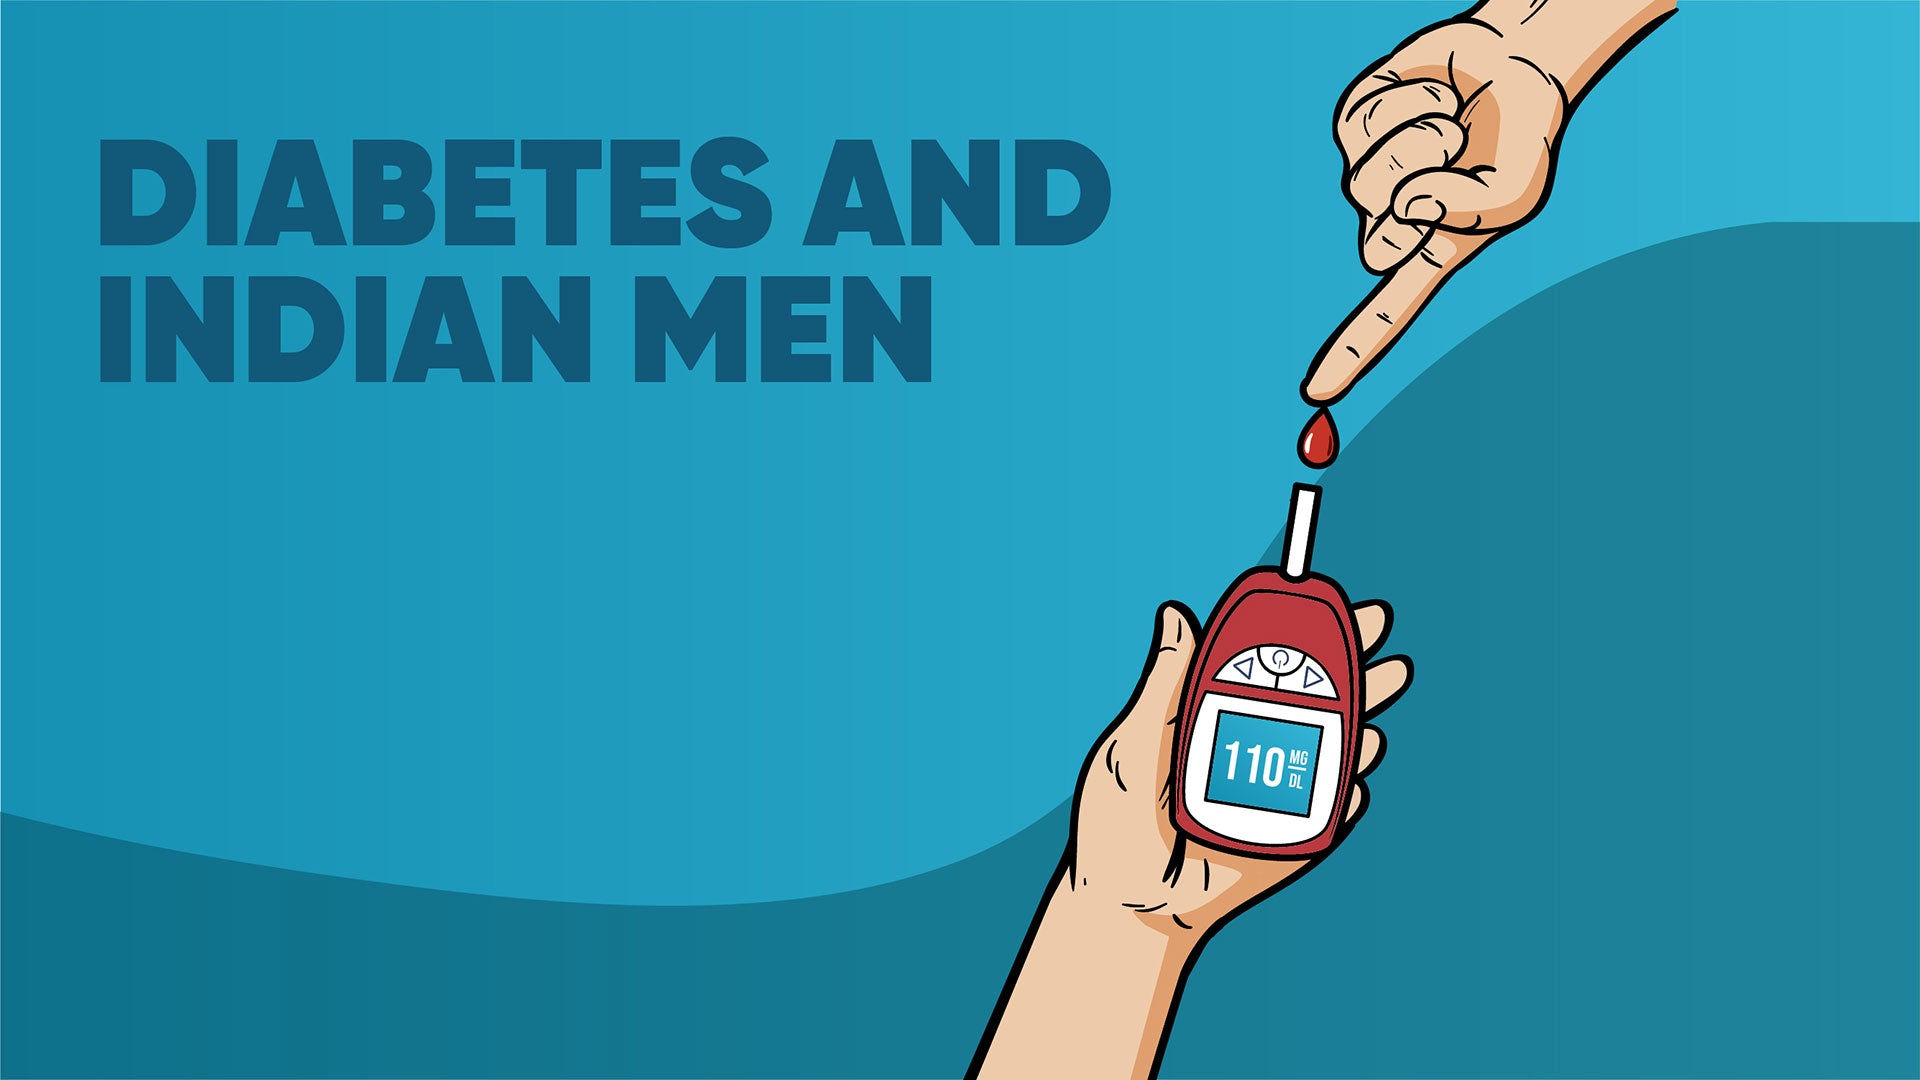 Diabetes and Indian Man: An Analysis